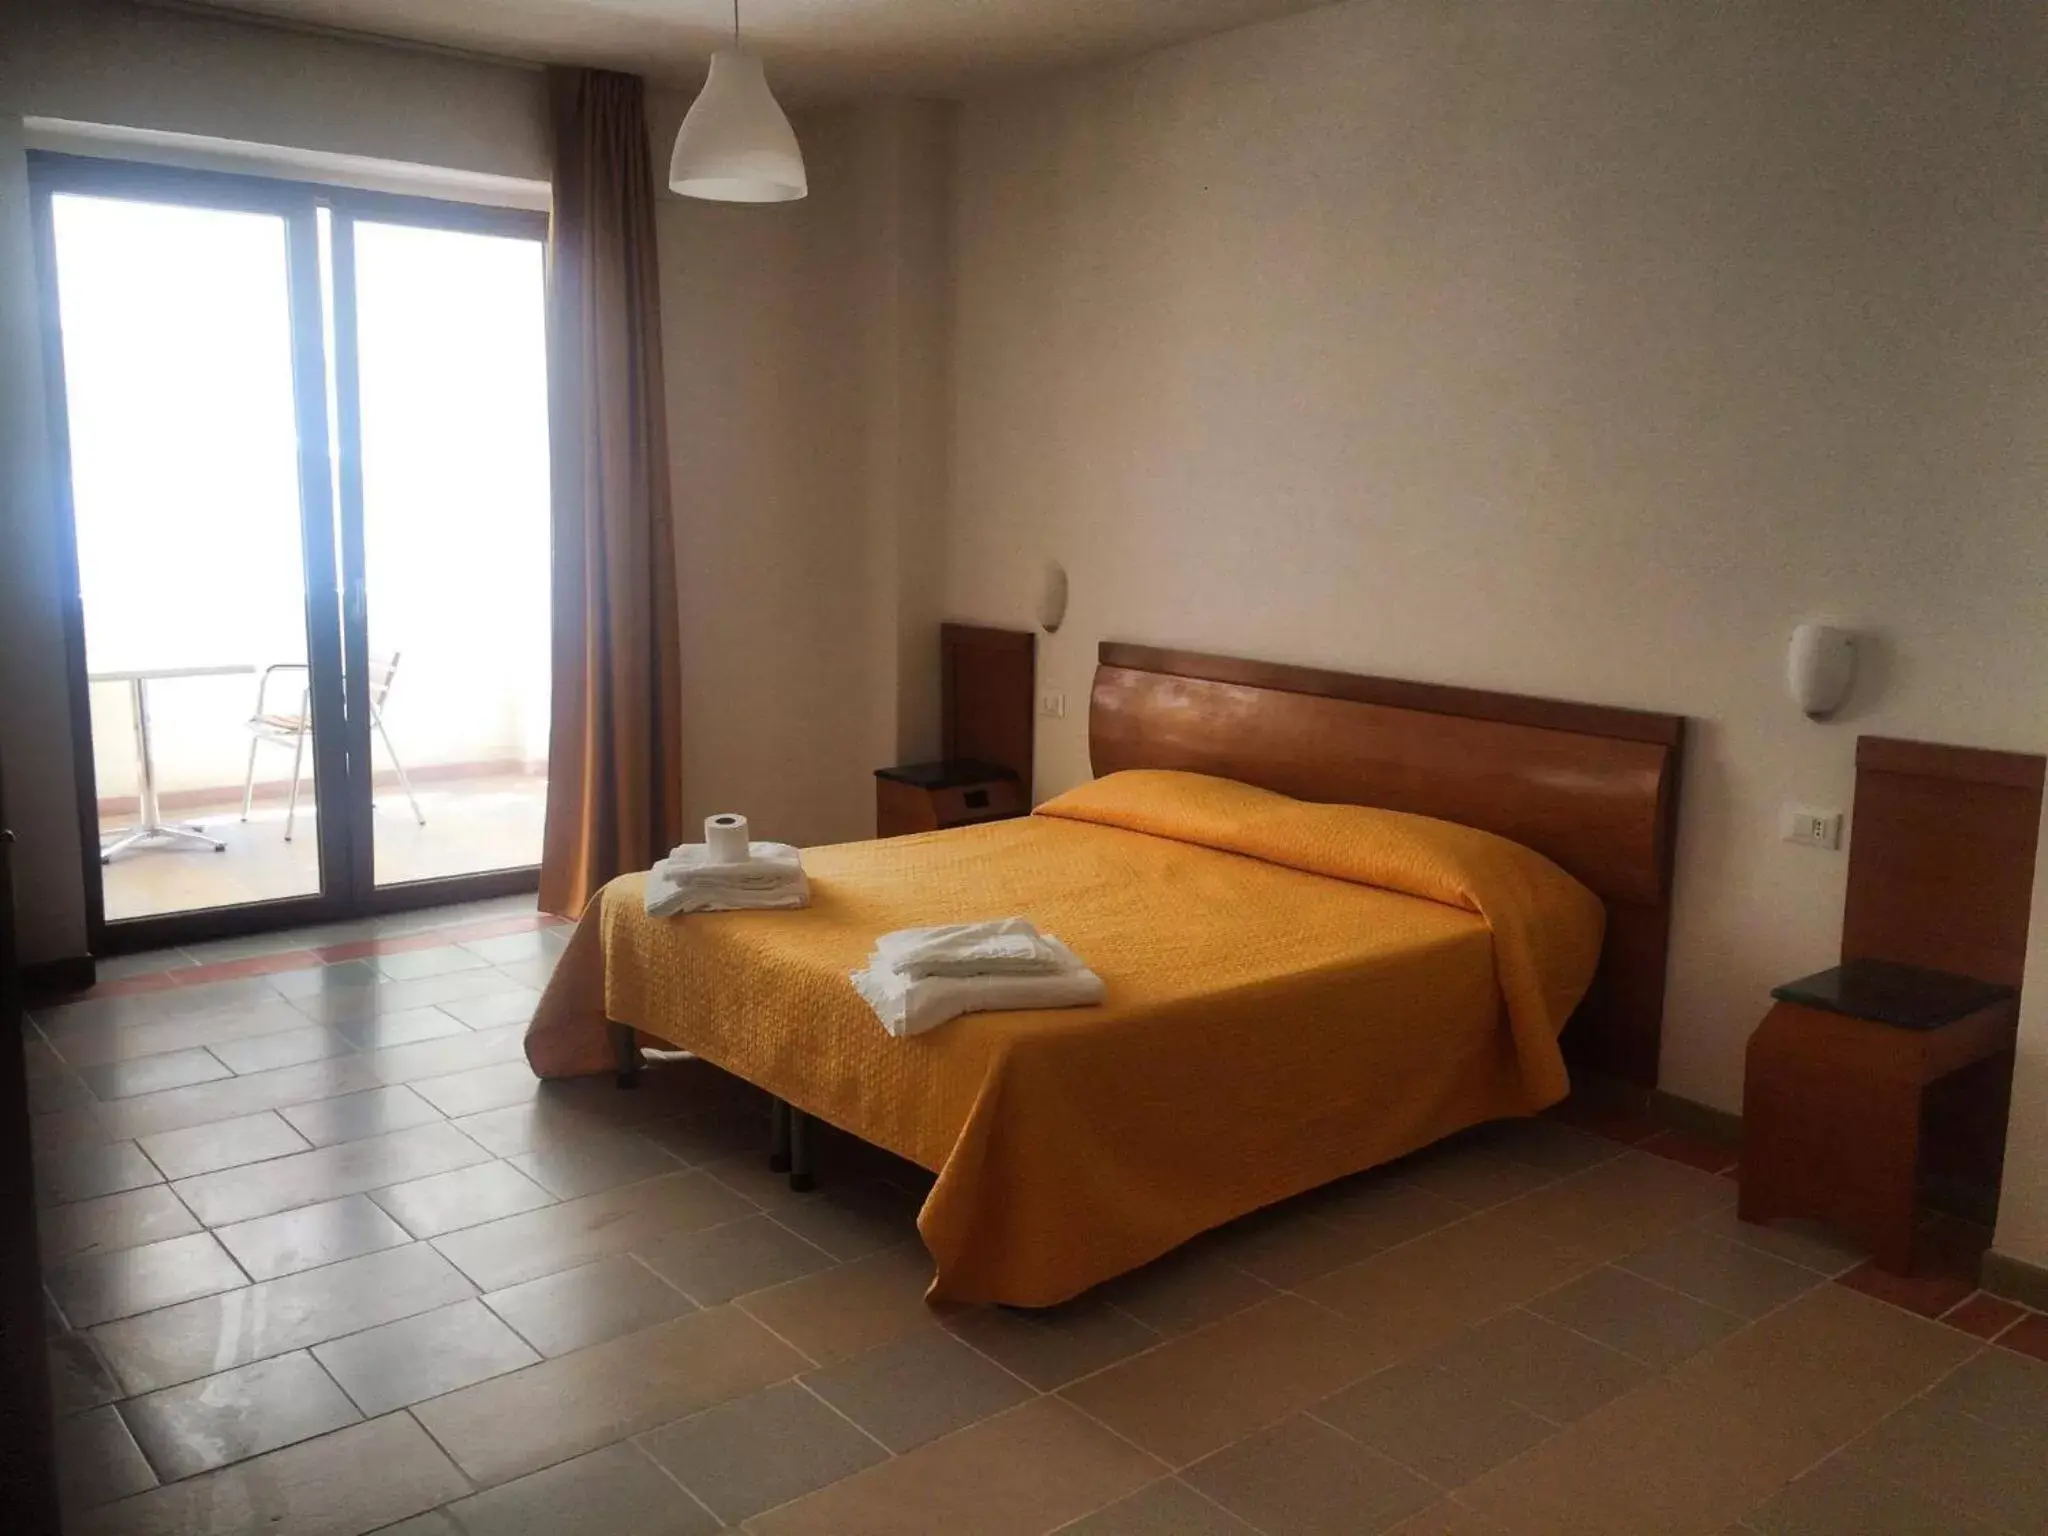 Bed, Room Photo in B&B Palazzo Manfredi Vieste vista mare con Parcheggio